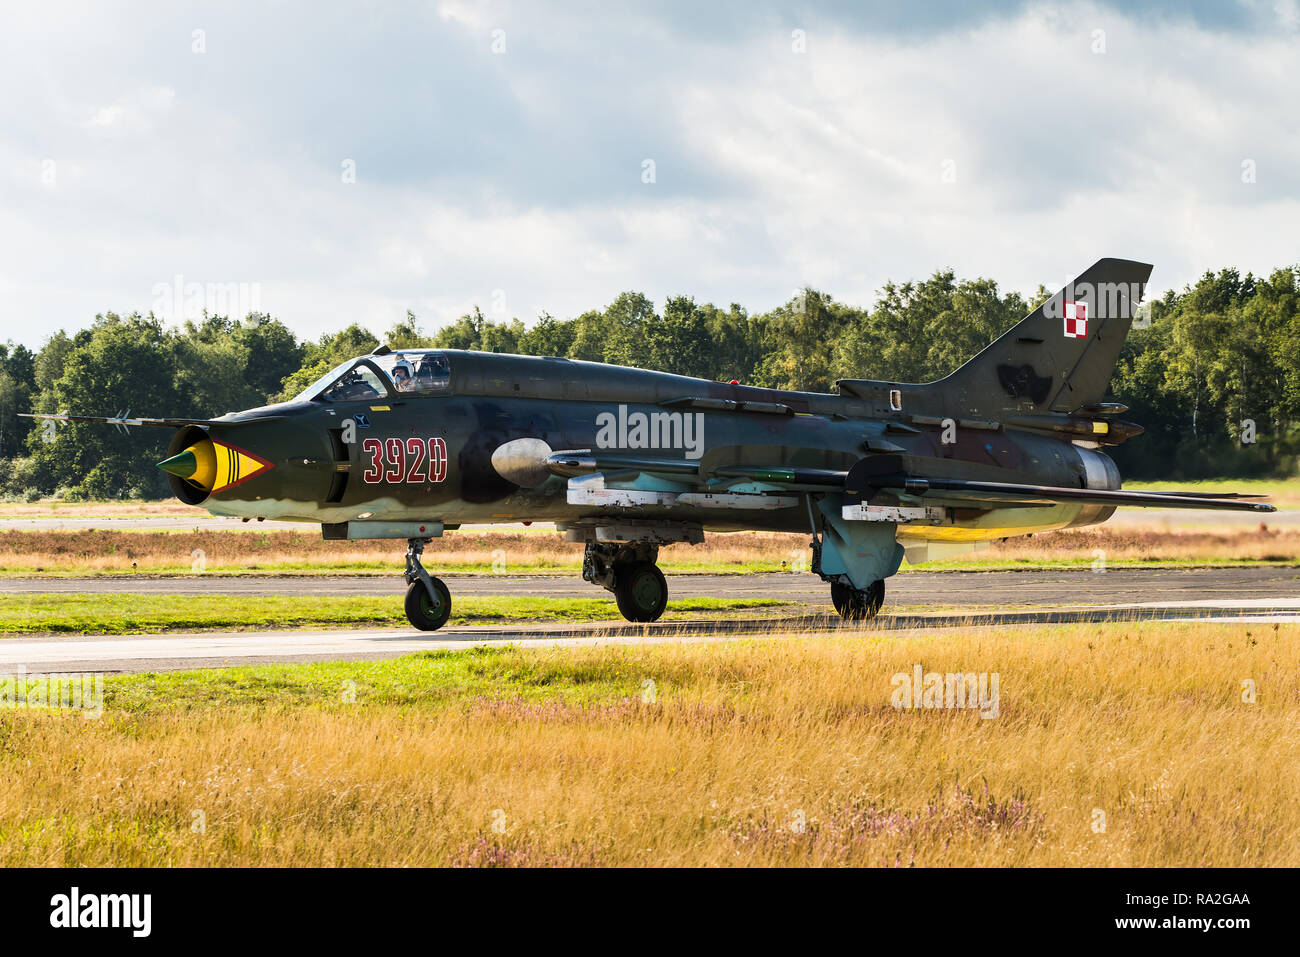 Eine Suchoi Su-17 "Fitter" kampfjet der polnischen Luftwaffe. Stockfoto